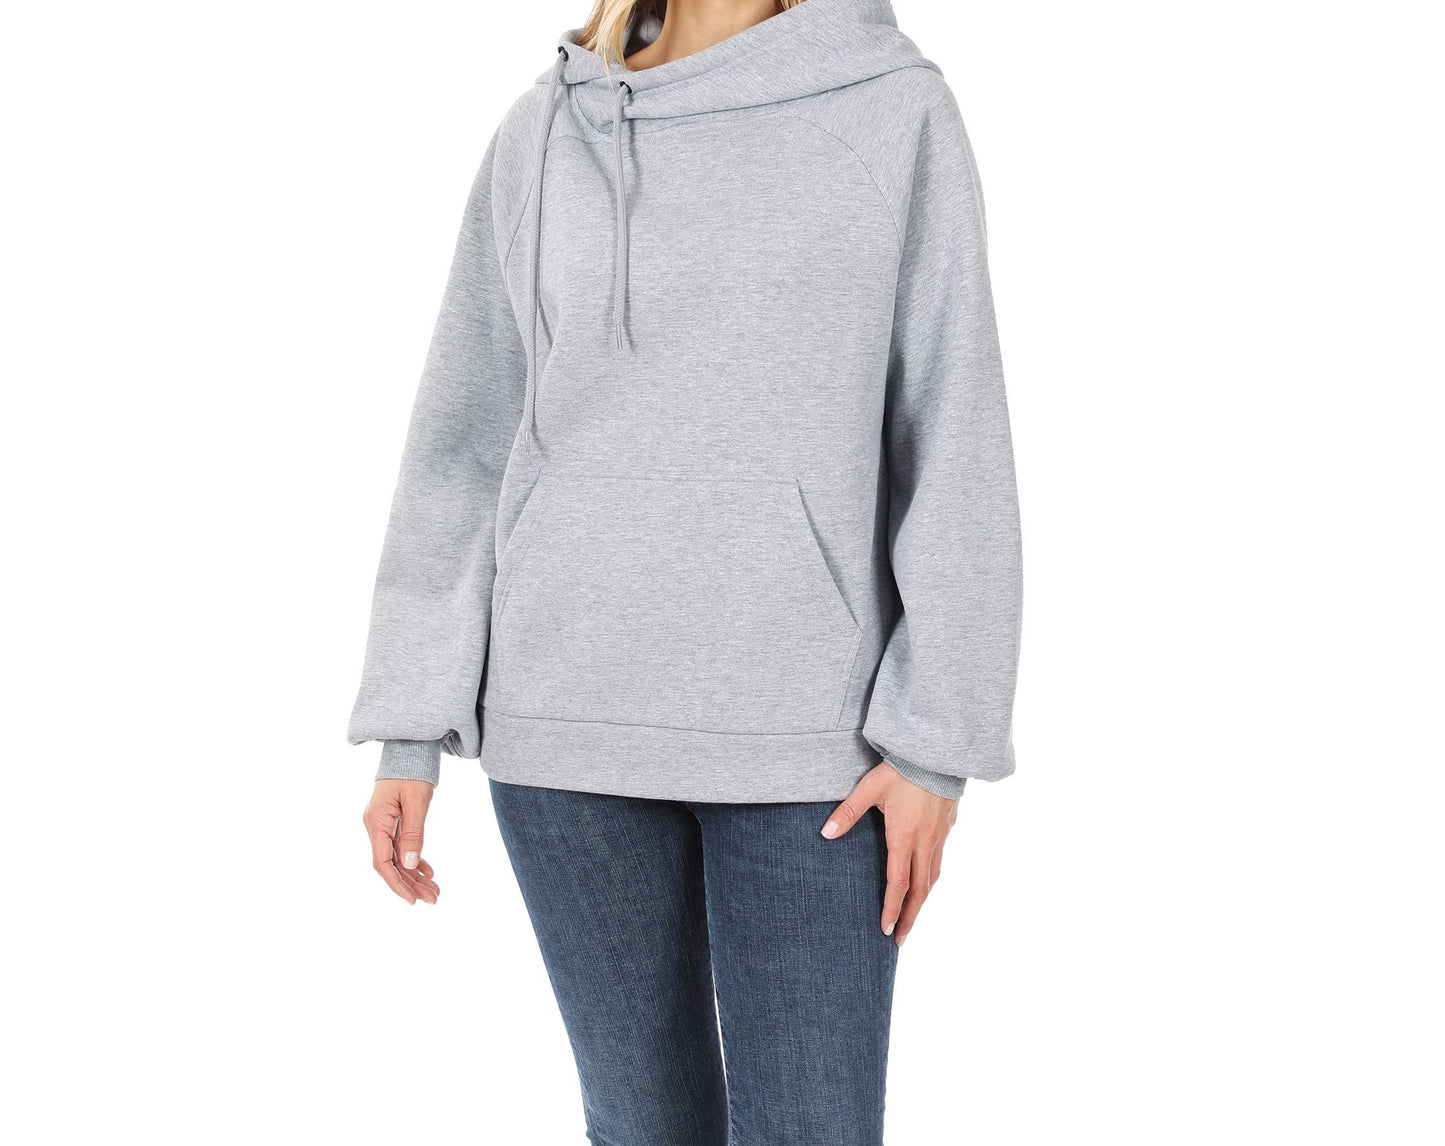 Zenana Side hooded Sweatshirt